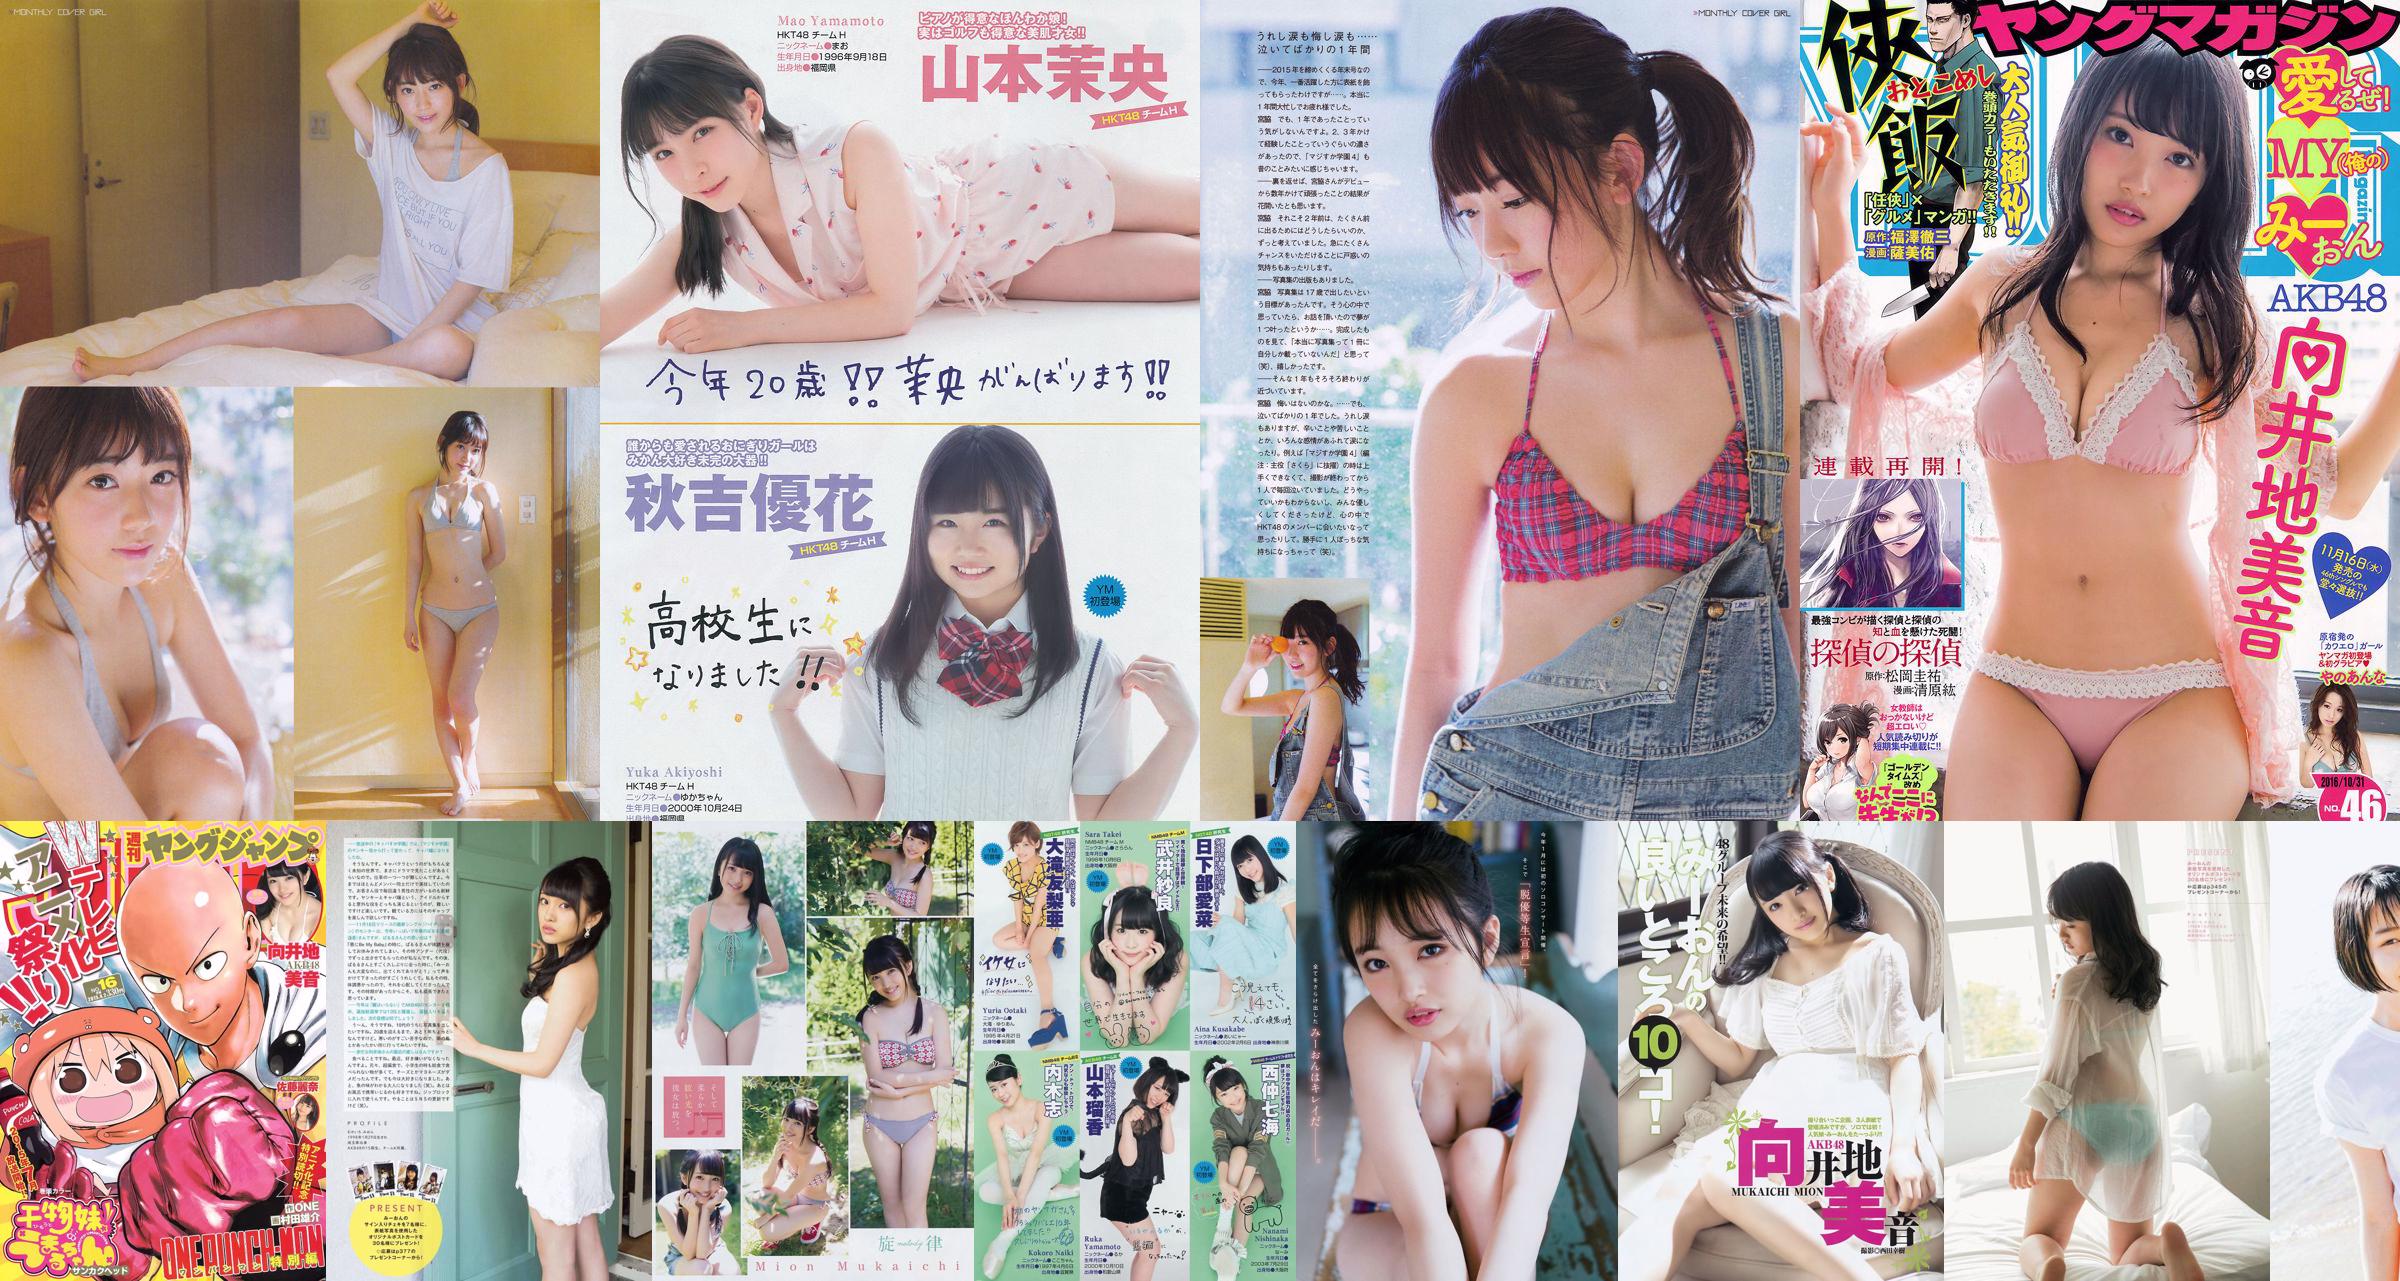 [Young Magazine] Mukaiji No.28 Photo Magazine 2016 No.dfa659 Page 1